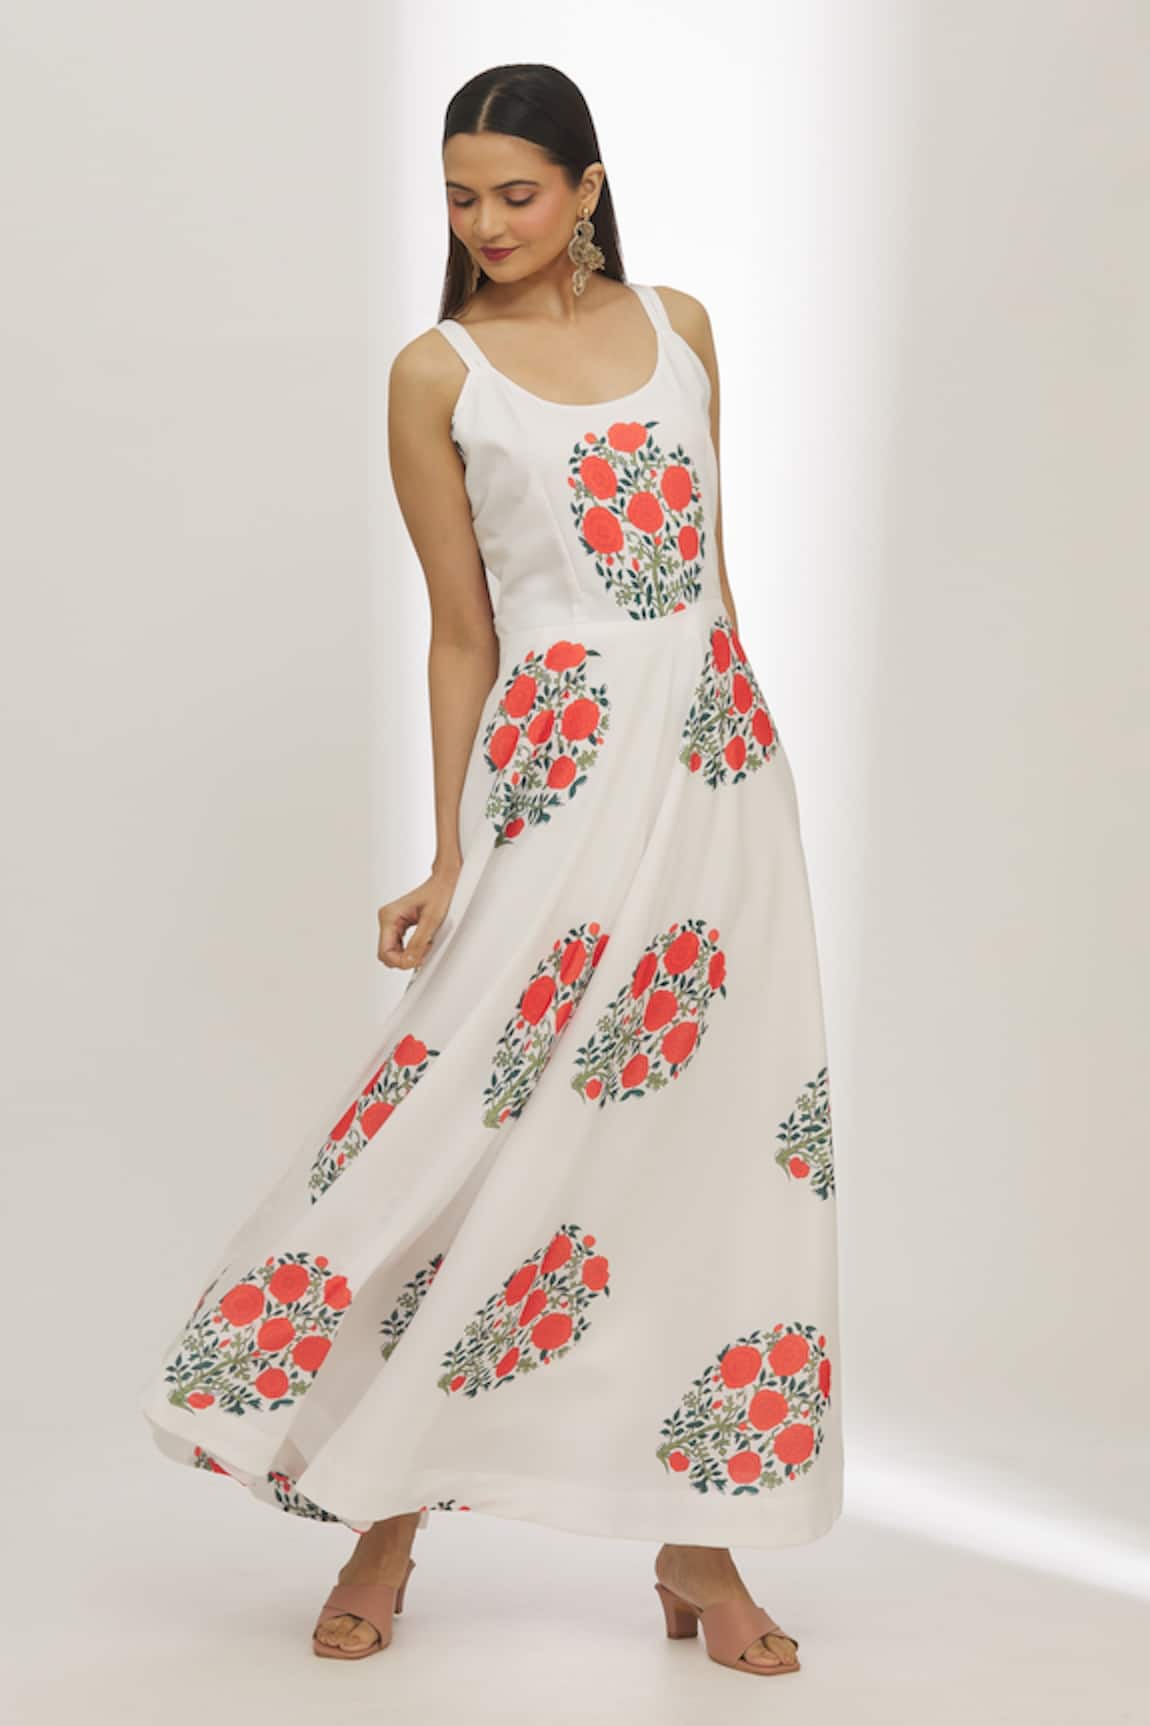 Adara Khan Floret Print Dress